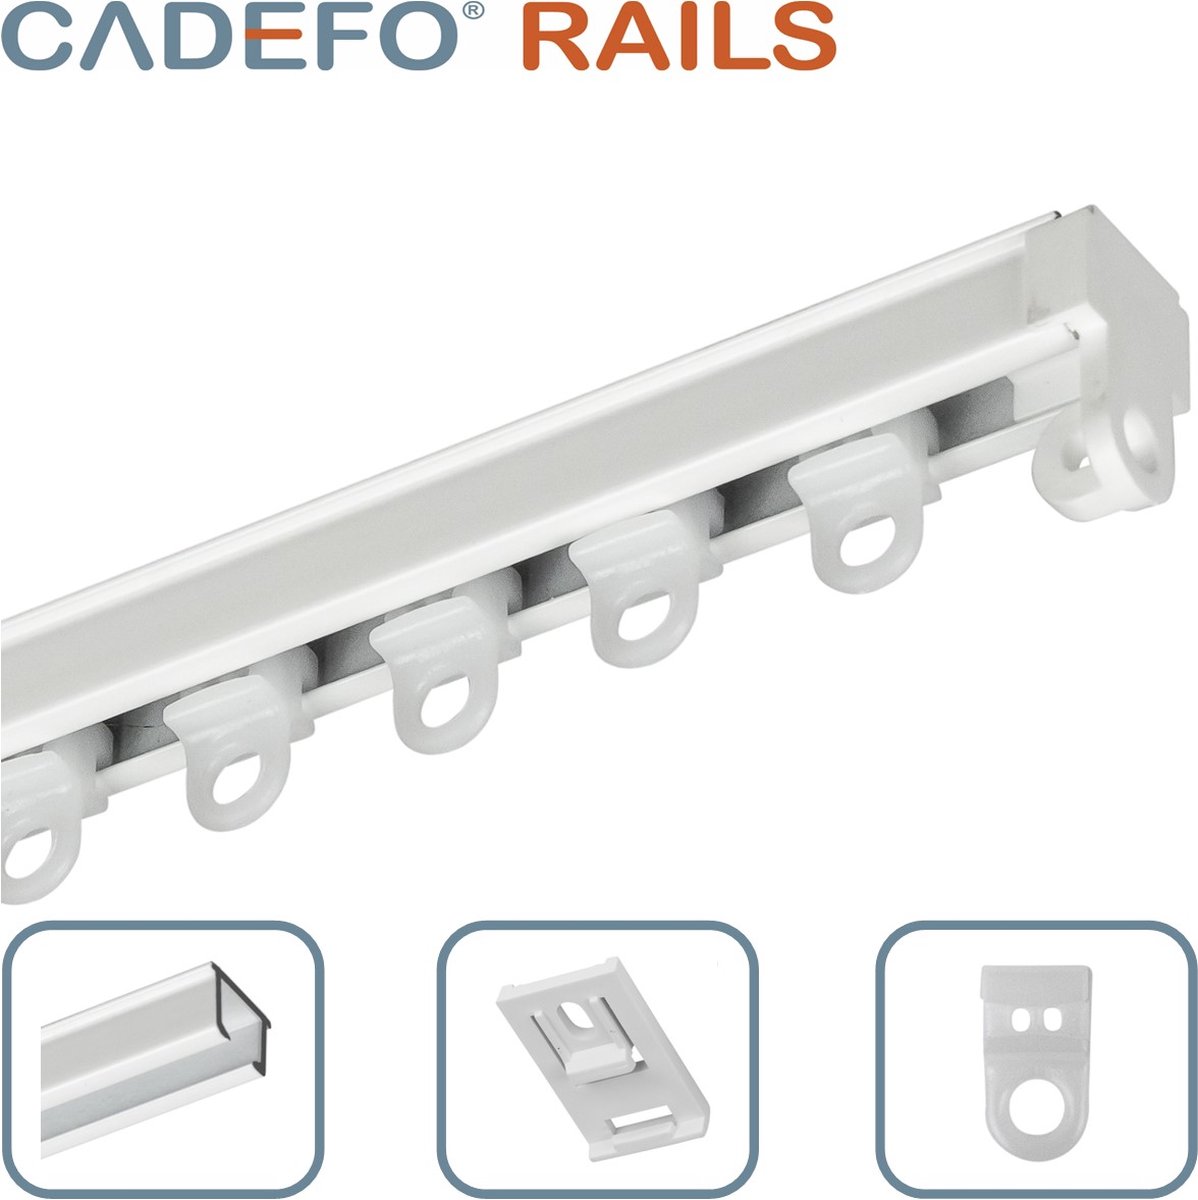 CADEFO RAILS (201 - 250 cm) Gordijnrails - Compleet op maat! - UIT 1 STUK - Leverbaar tot 6 meter - Plafondbevestiging - Lengte 206 cm